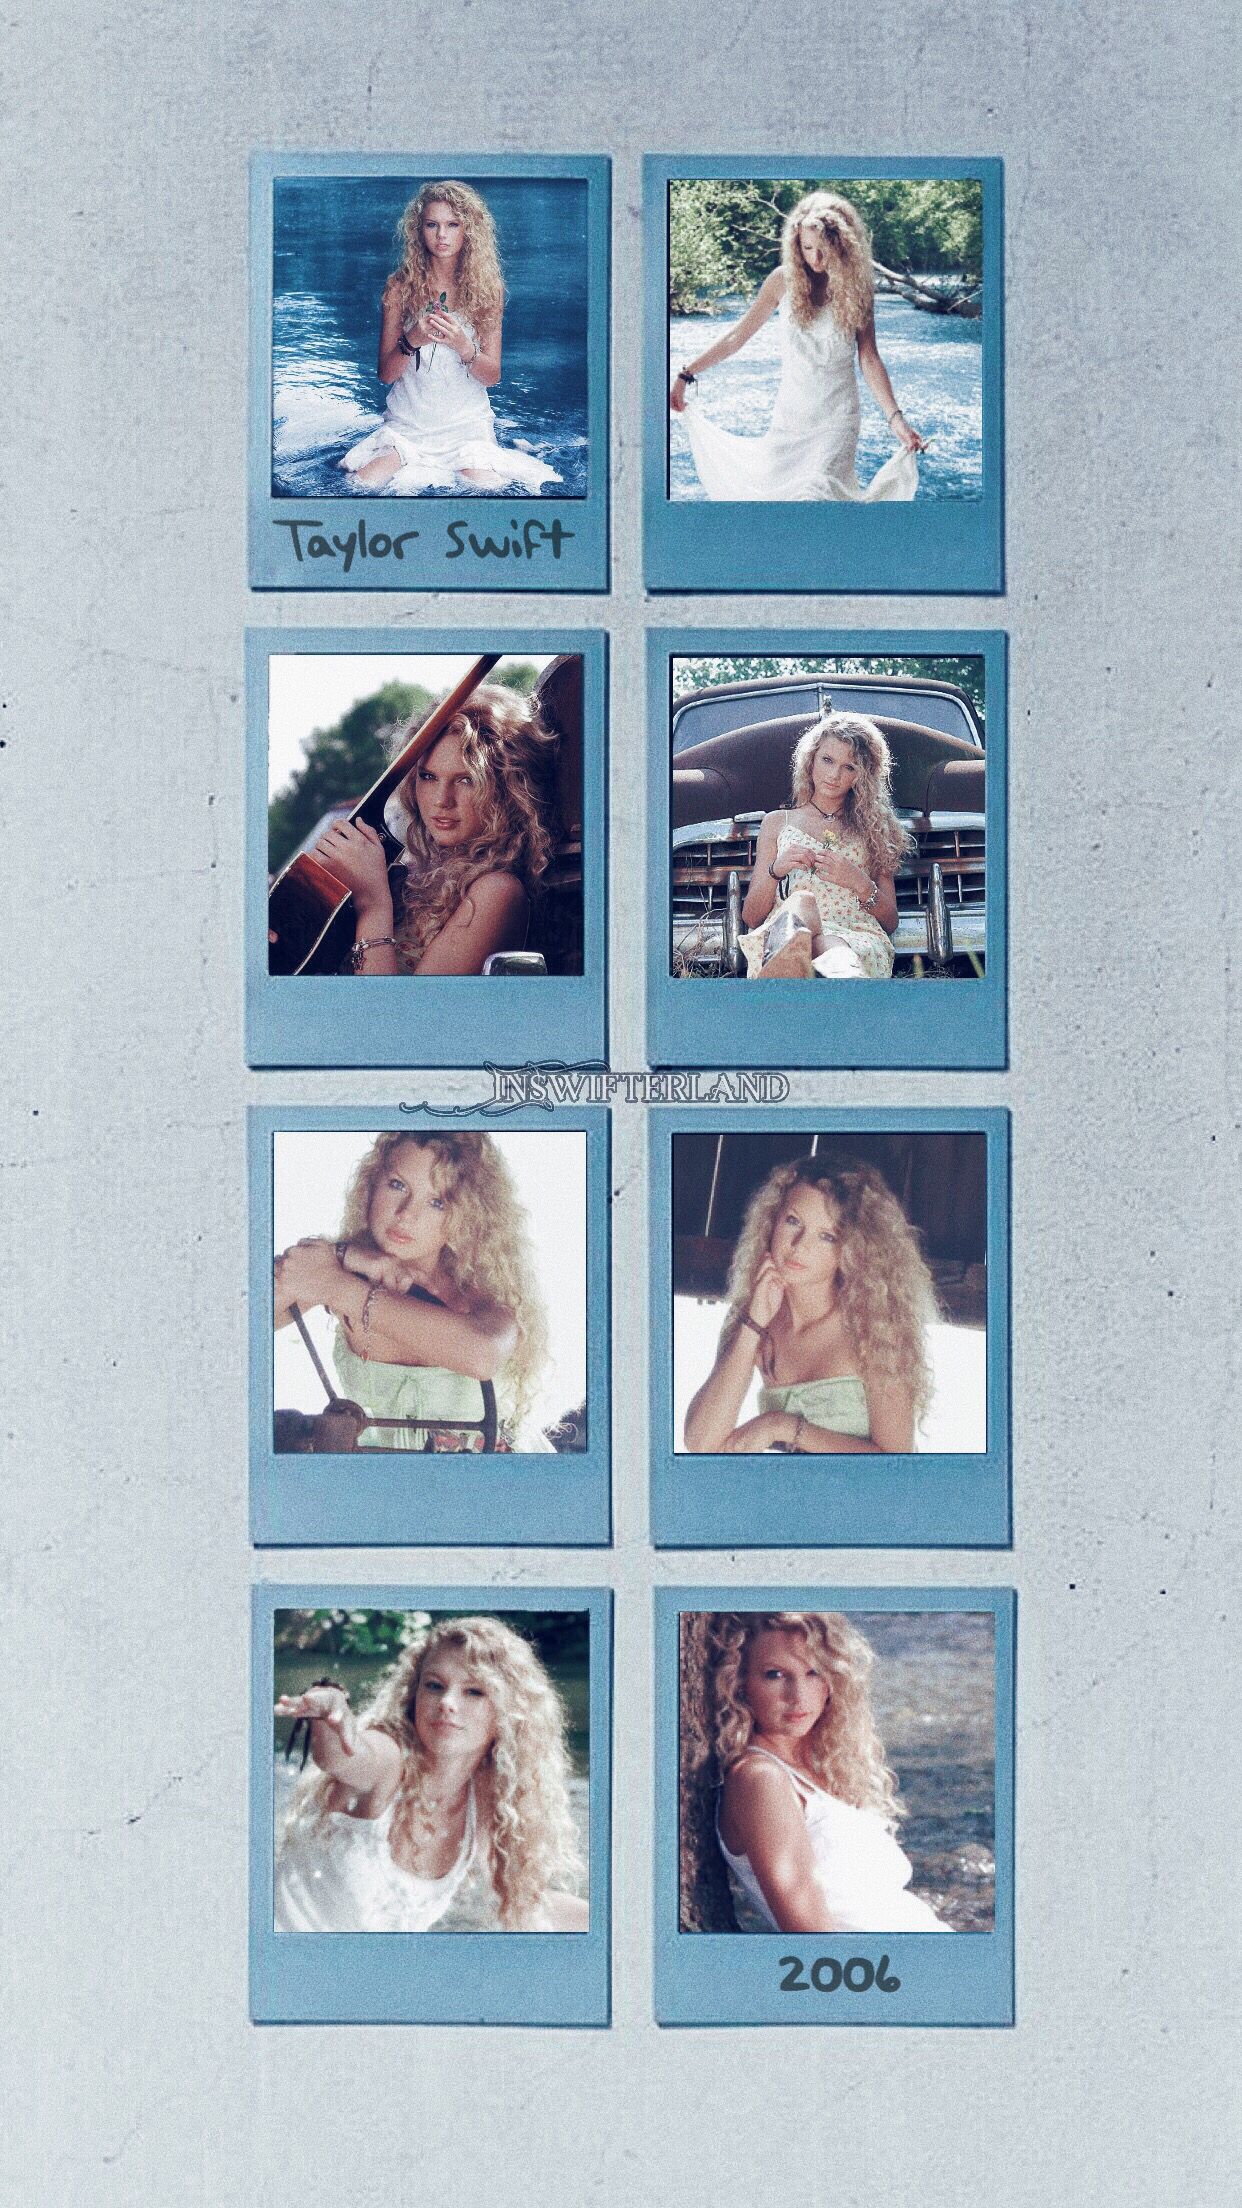 Taylor Swift Wallpaper. Taylor swift wallpaper, Taylor swift first album, Taylor swift